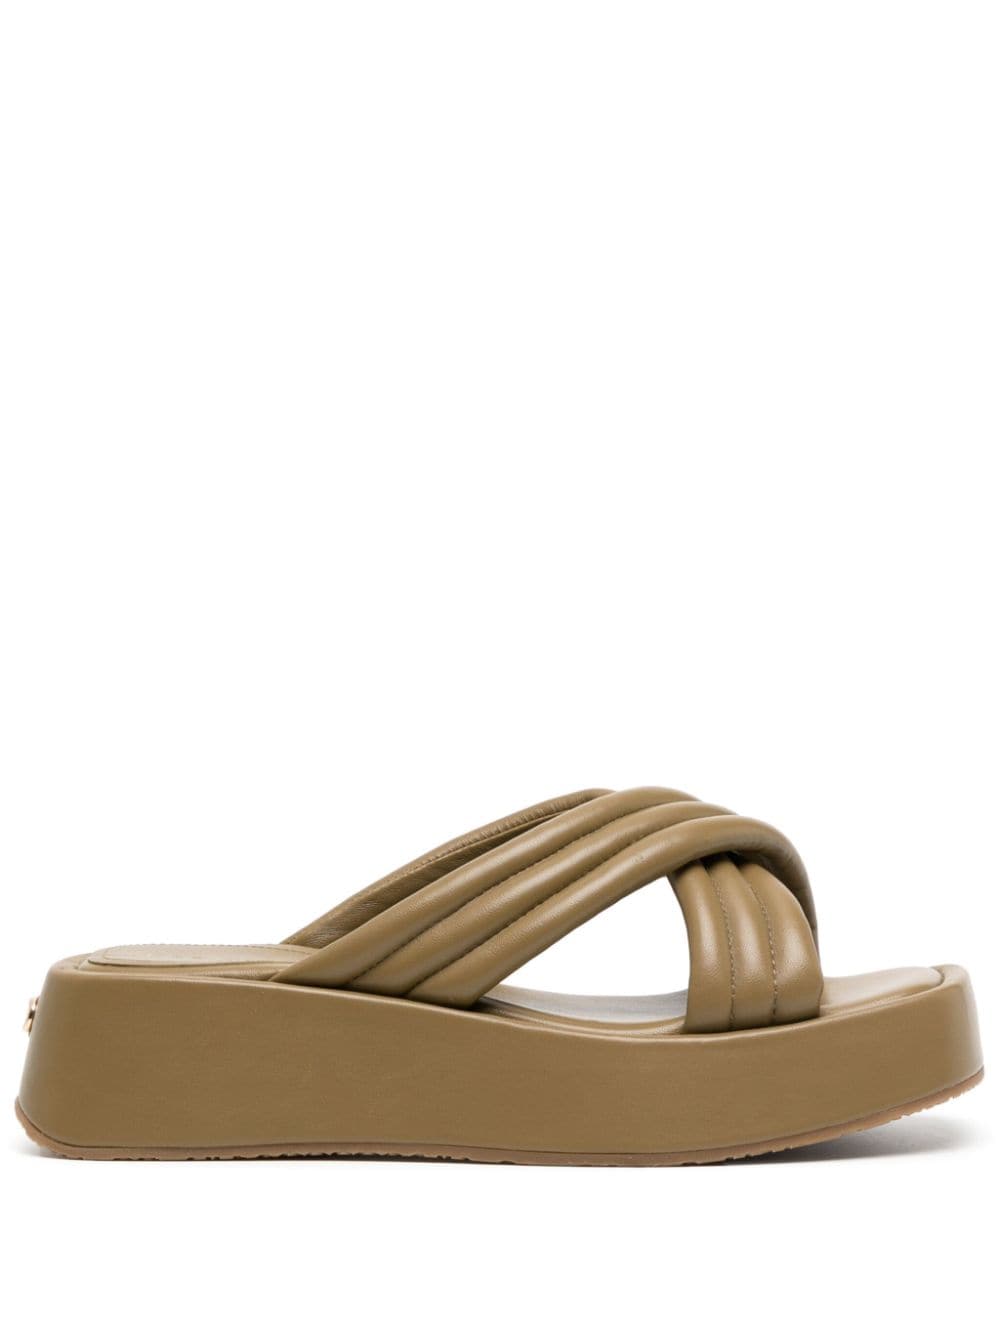 Dee Ocleppo Sicily 50mm platform leather sandals - Brown von Dee Ocleppo